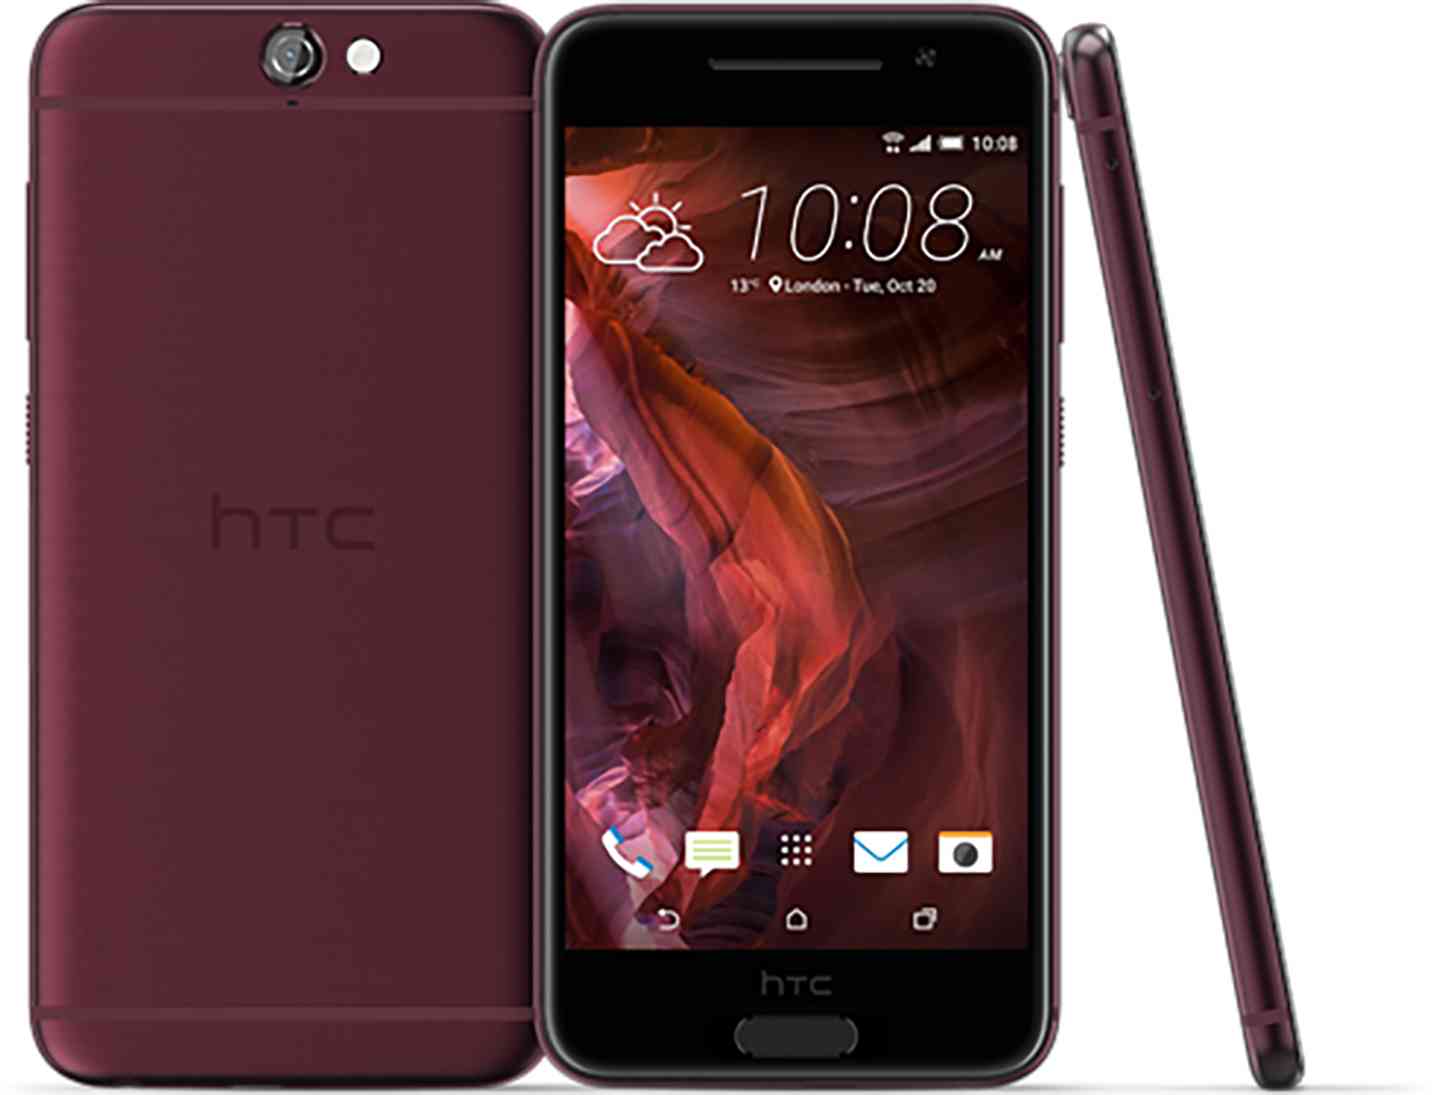 Il nuovo HTC One A9 punta su design, audio e video